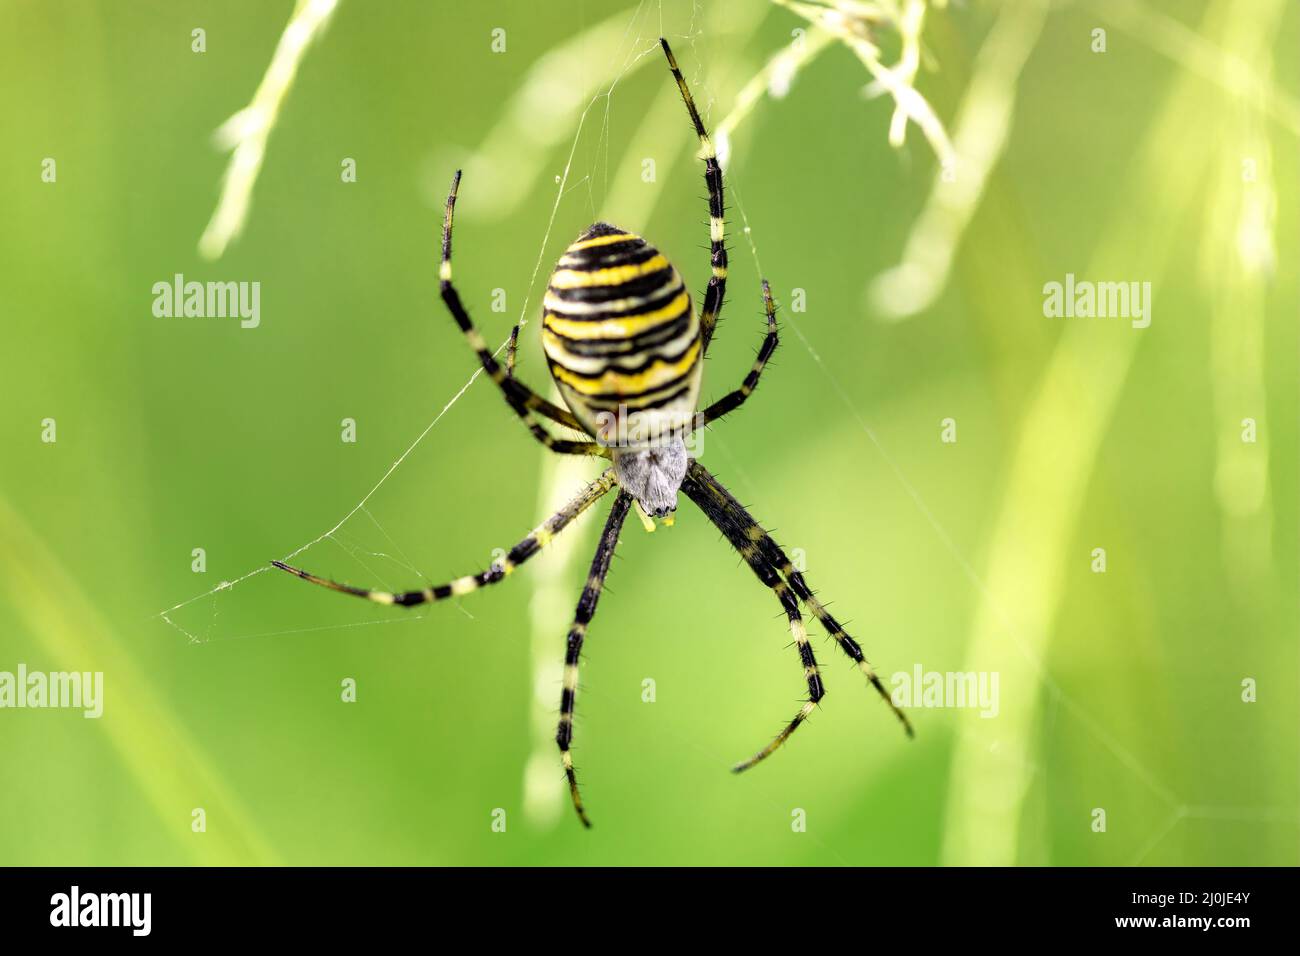 Argiope bruennichi (wasp spider) on web Stock Photo